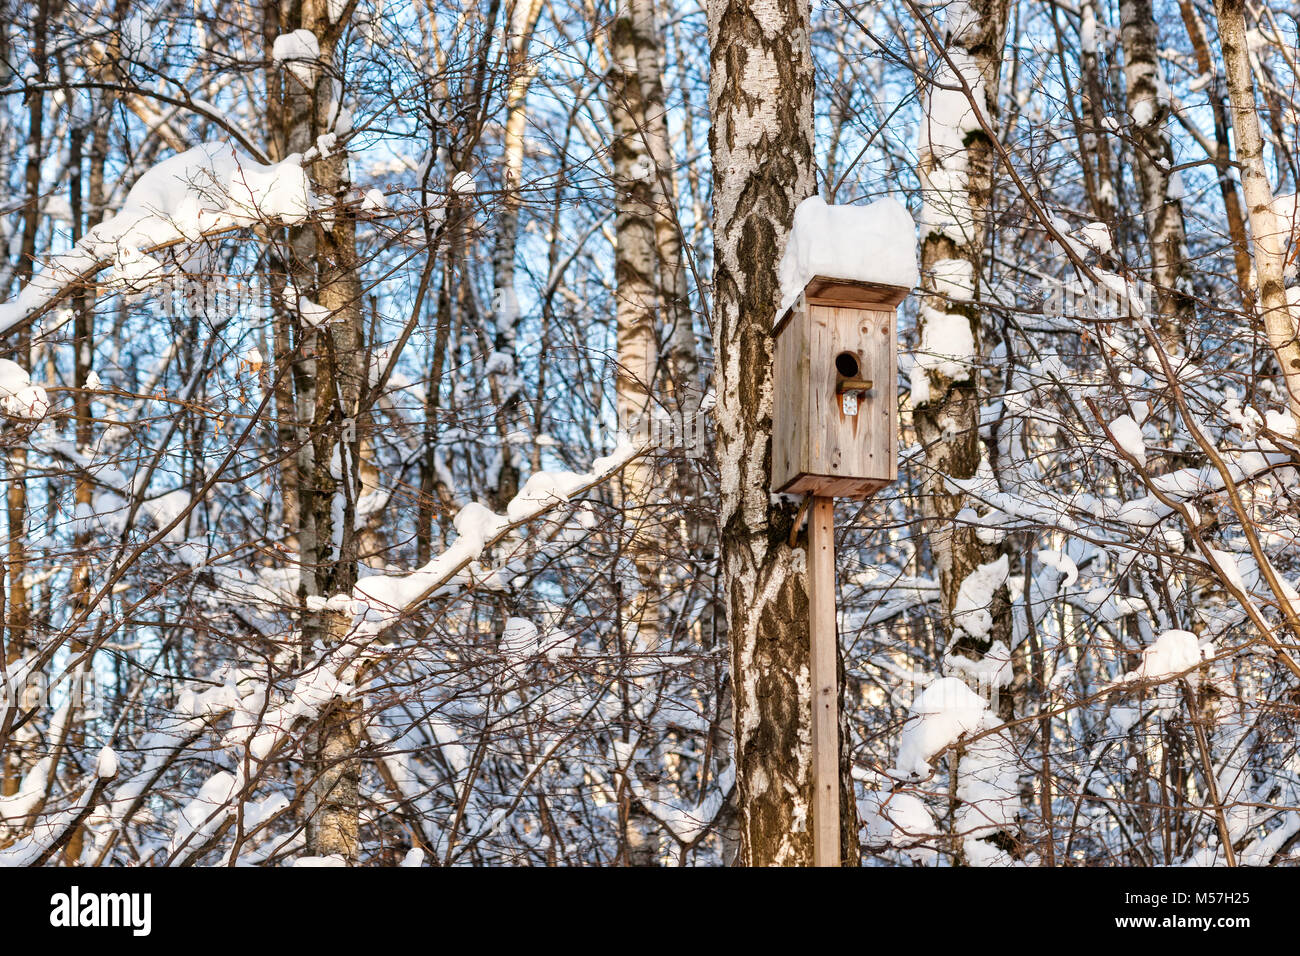 Bird casa su una betulla in una foresta invernale, giornata di sole e cielo blu, tappo bianco di neve sul tetto Foto Stock